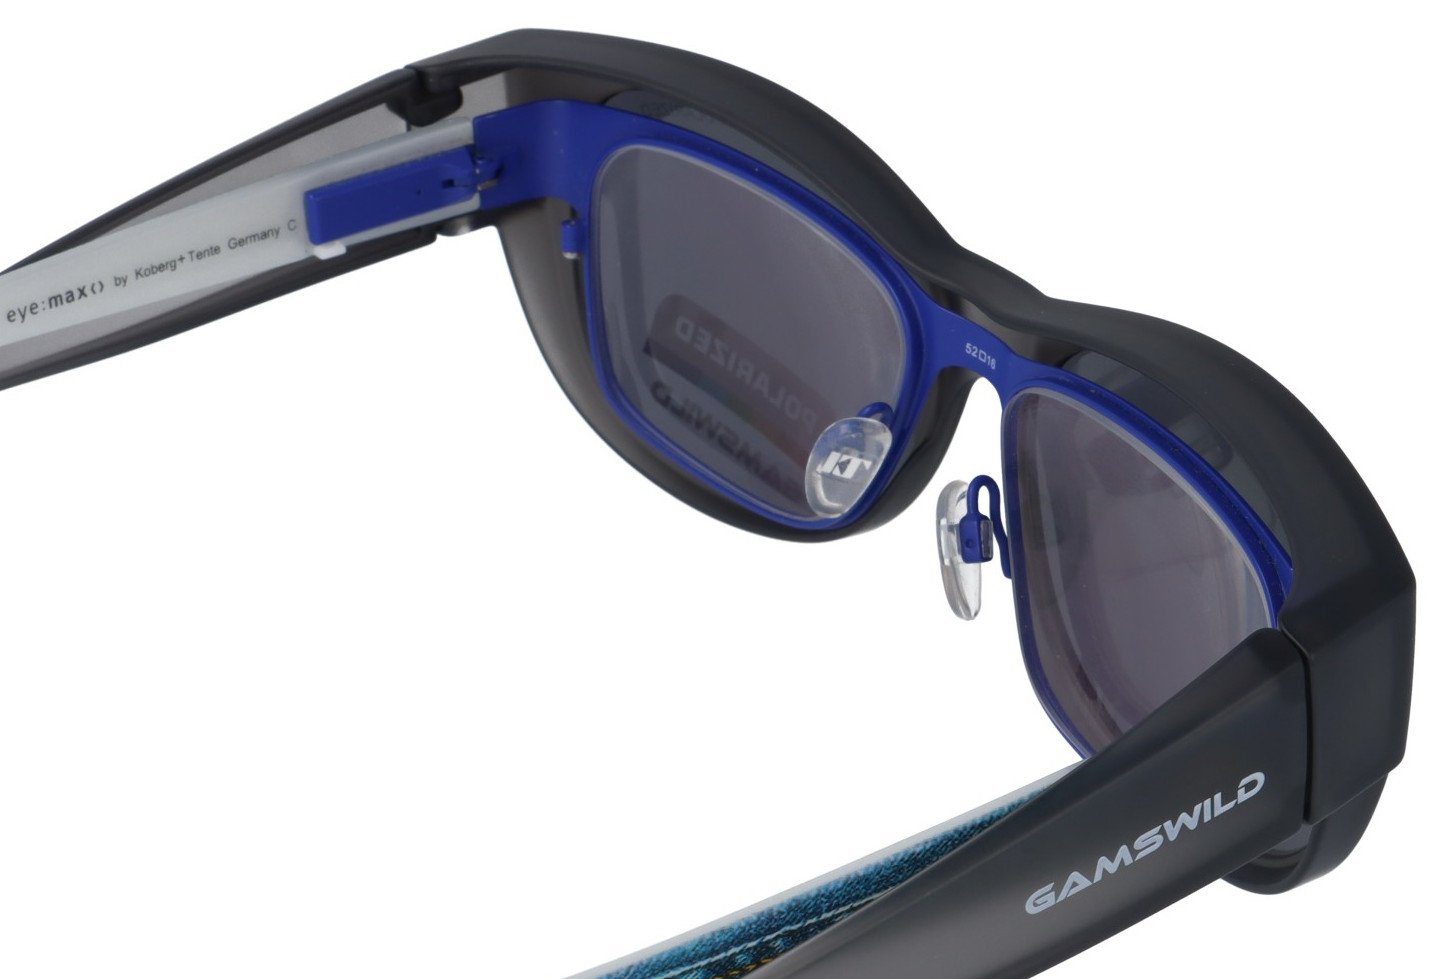 Herren, schwarz, Damen braun, Überbrille WS4032 polarisiert, Sonnenbrille Passform universelle grau Gamswild grau-transparent Sportbrille